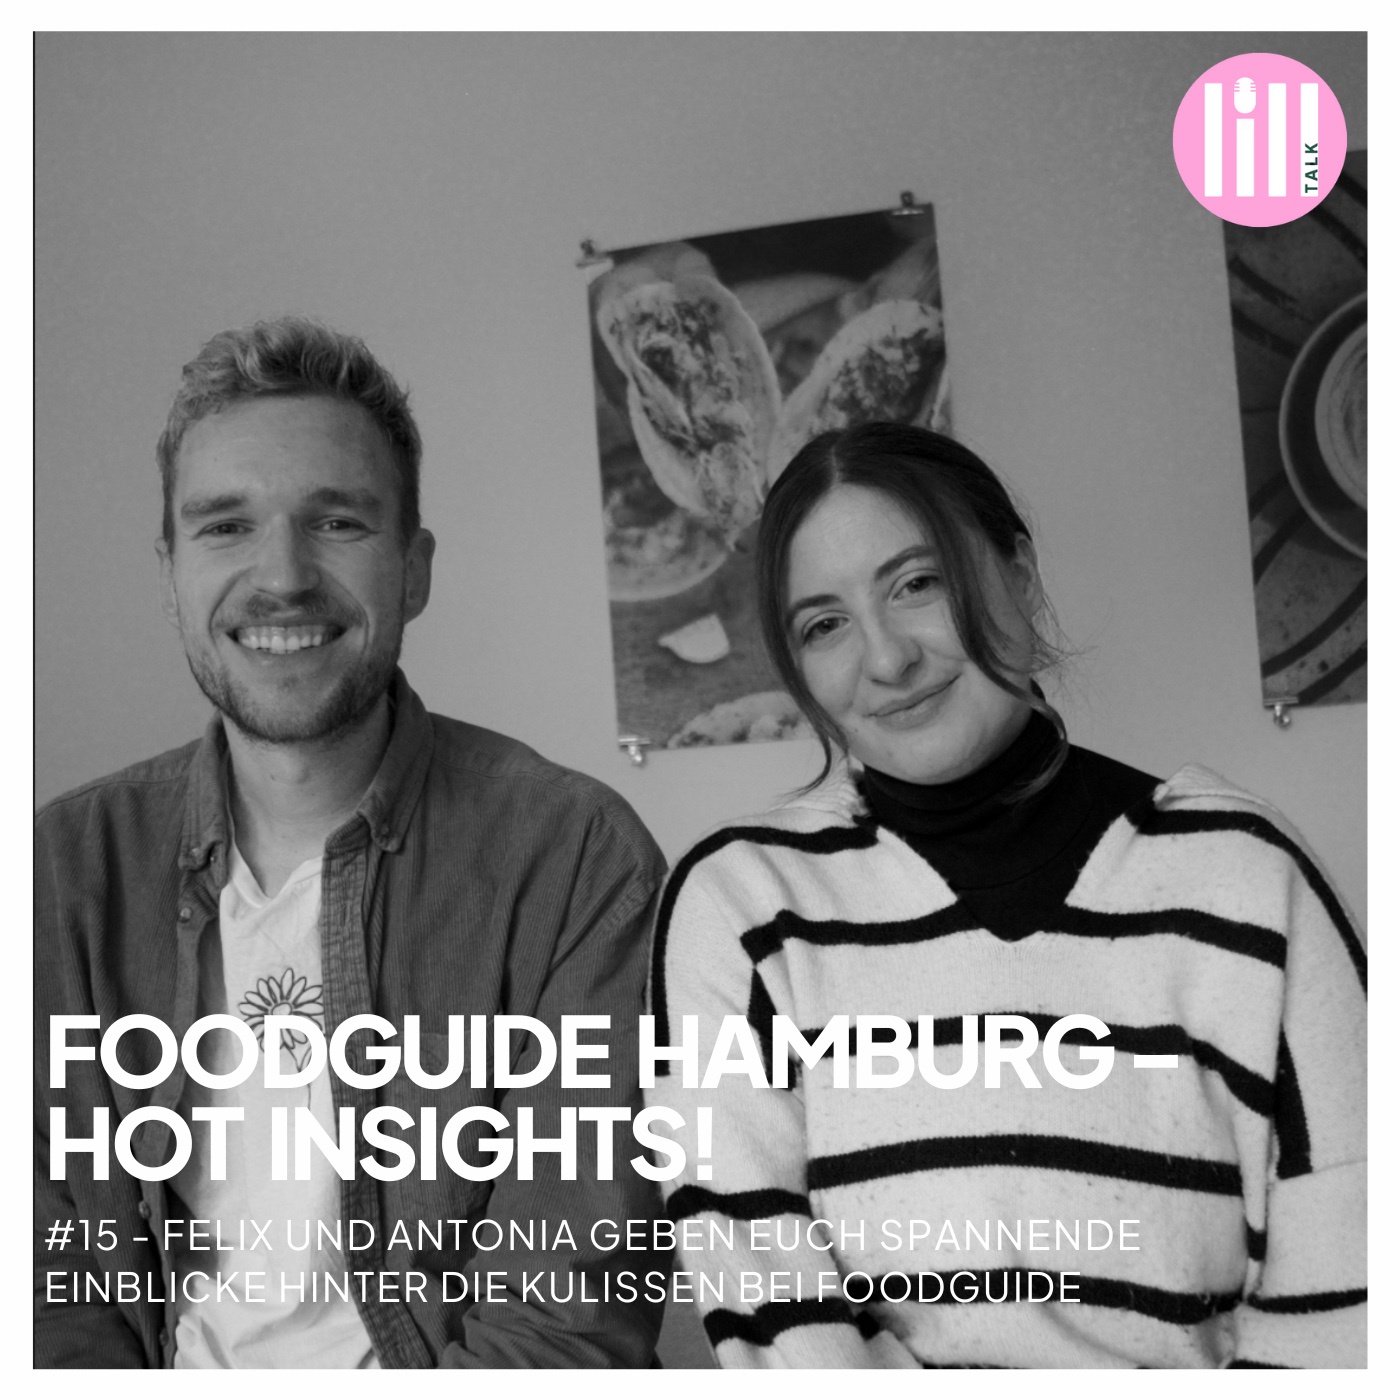 #15 FOODGUIDE HAMBURG - HOT INSIGHTS! - Felix und Antonia geben spannende Einblicke hinter die Kulissen